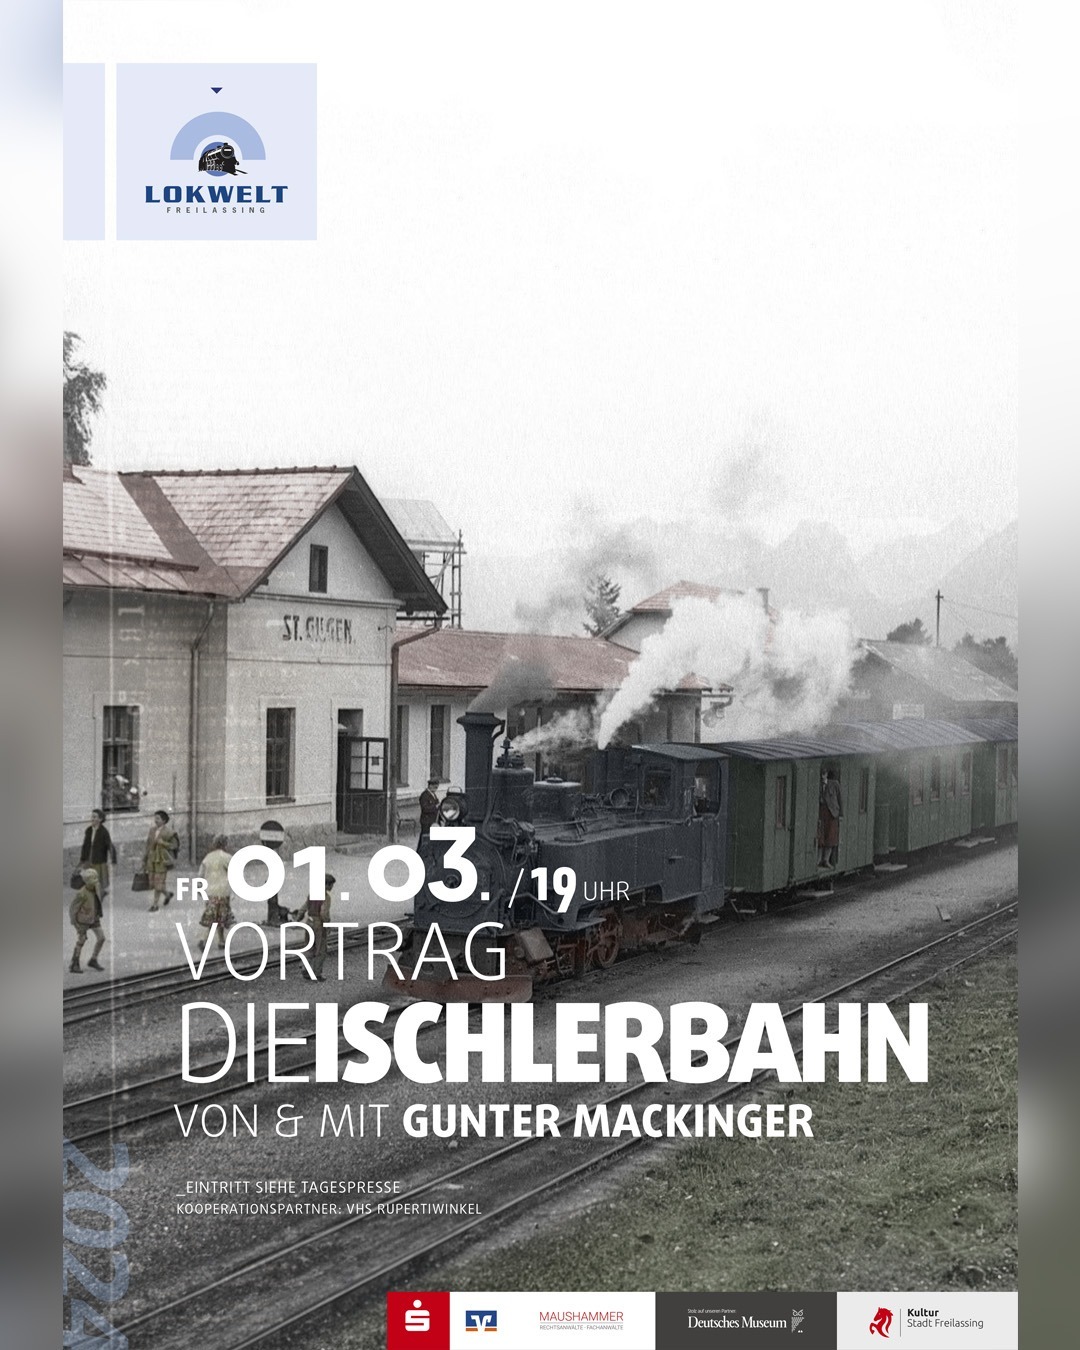 Vortrag Gunter Mackinger - Die Ischlerbahn